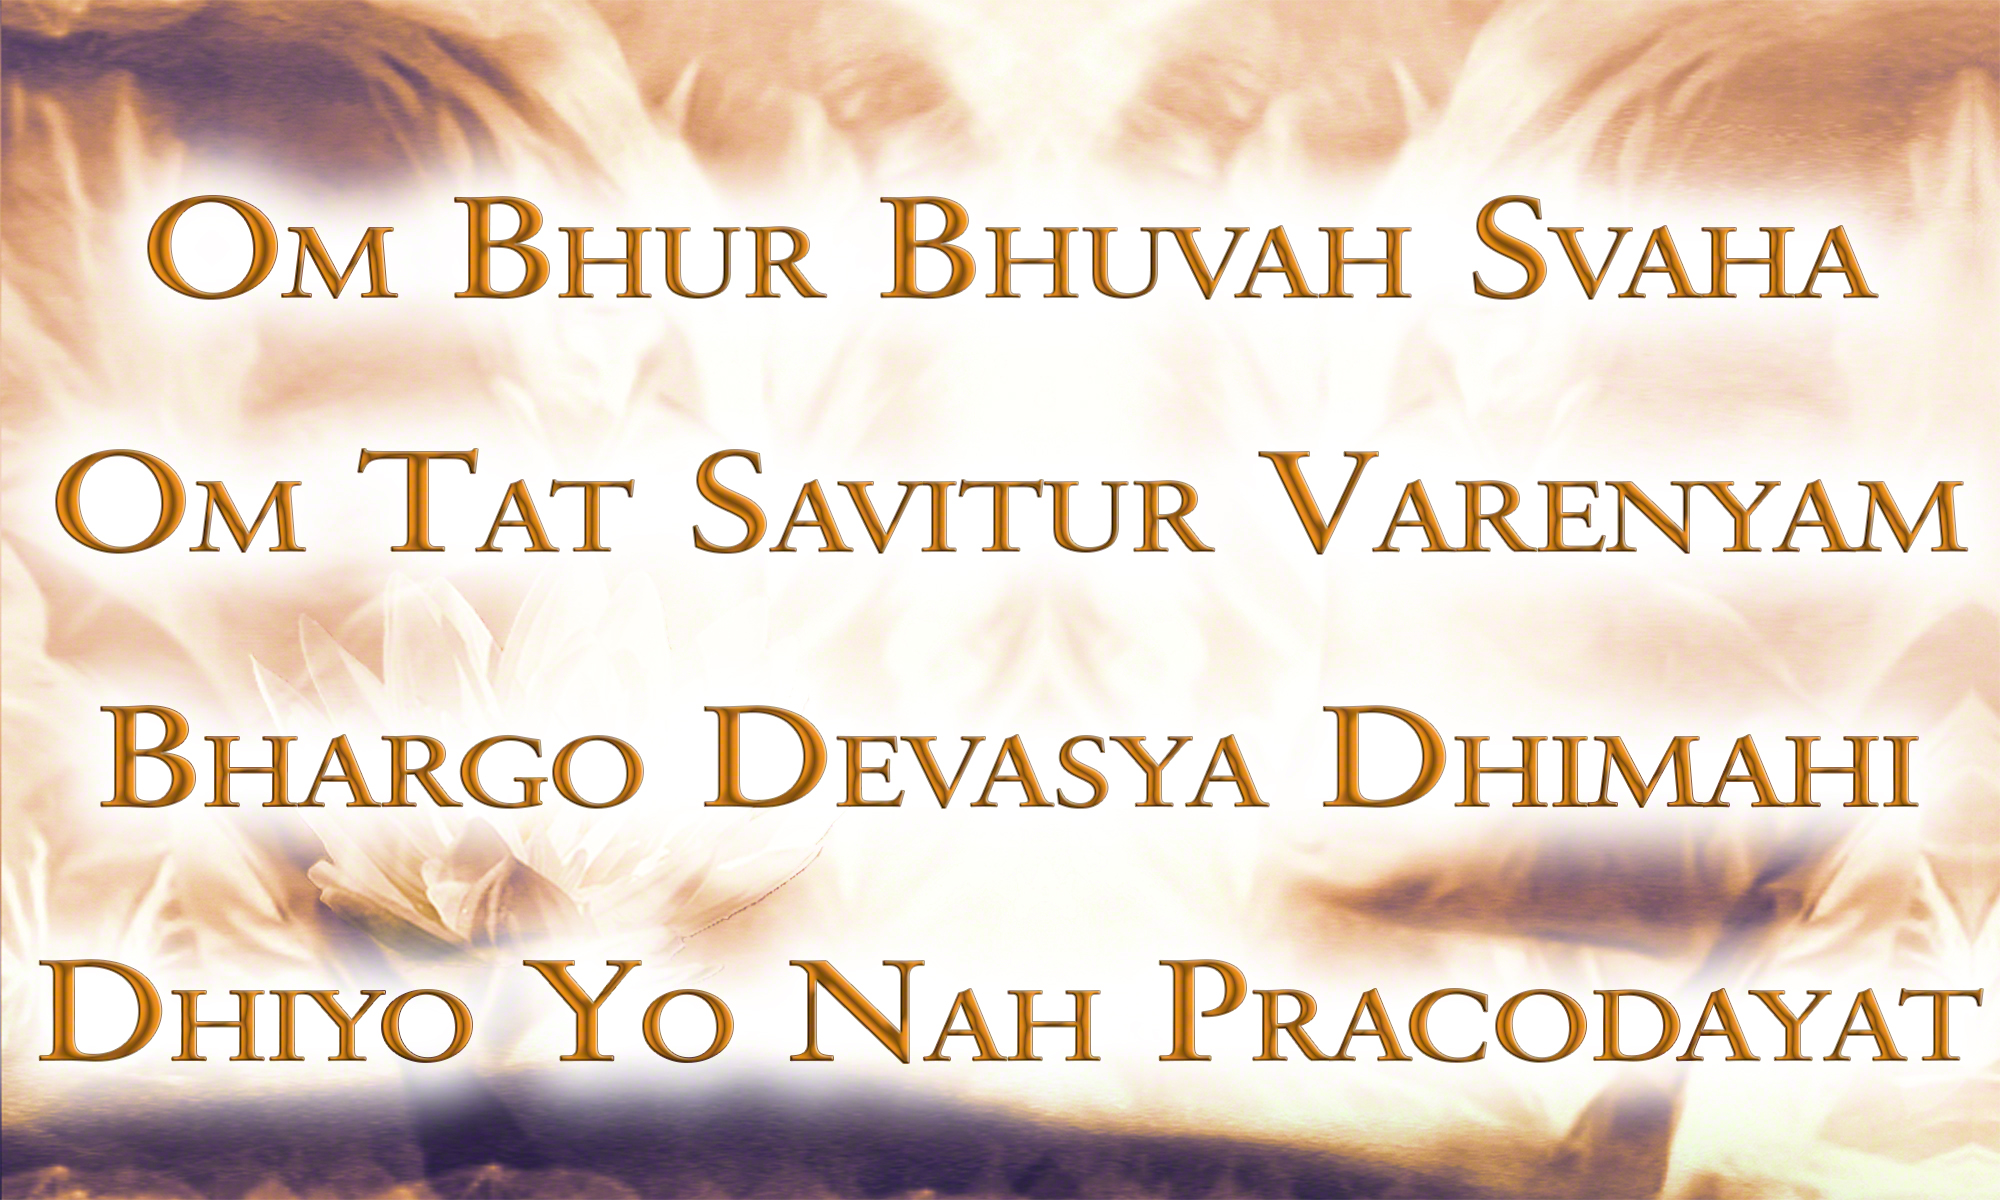 Om Bhur - We Are on Our Way (Gayatri Mantra) by Canda & Guru Atman